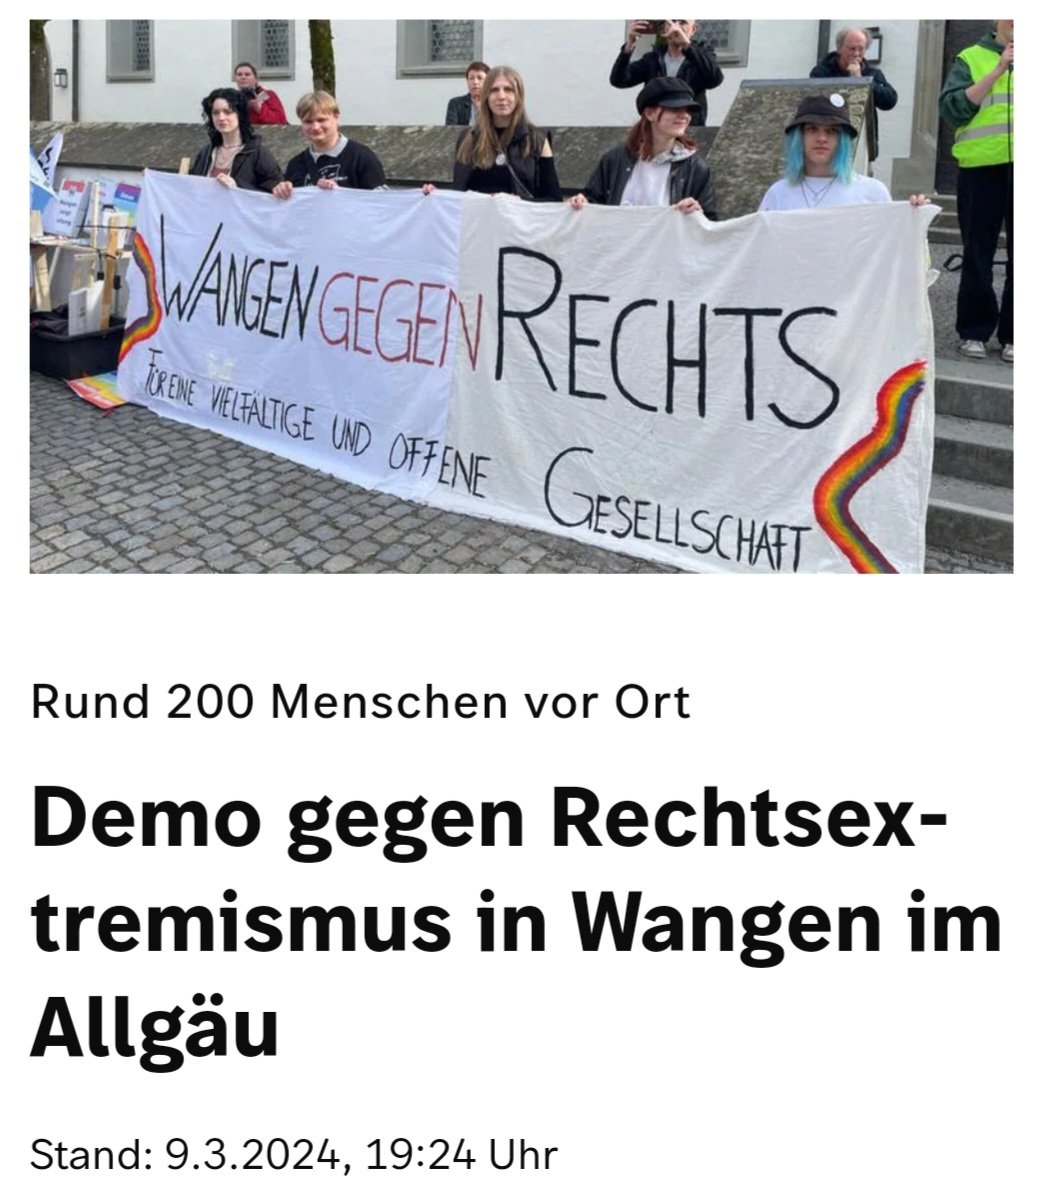 In #Wangen im #Allgäu demonstrierten vor gut einem Monat rund 200 Bürger gegen RÄÄÄCHTS! Sie forderten eine 'vielfältige und offene Gesellschaft'. Tja, die Geister die ich rief?! 🤔😏😖